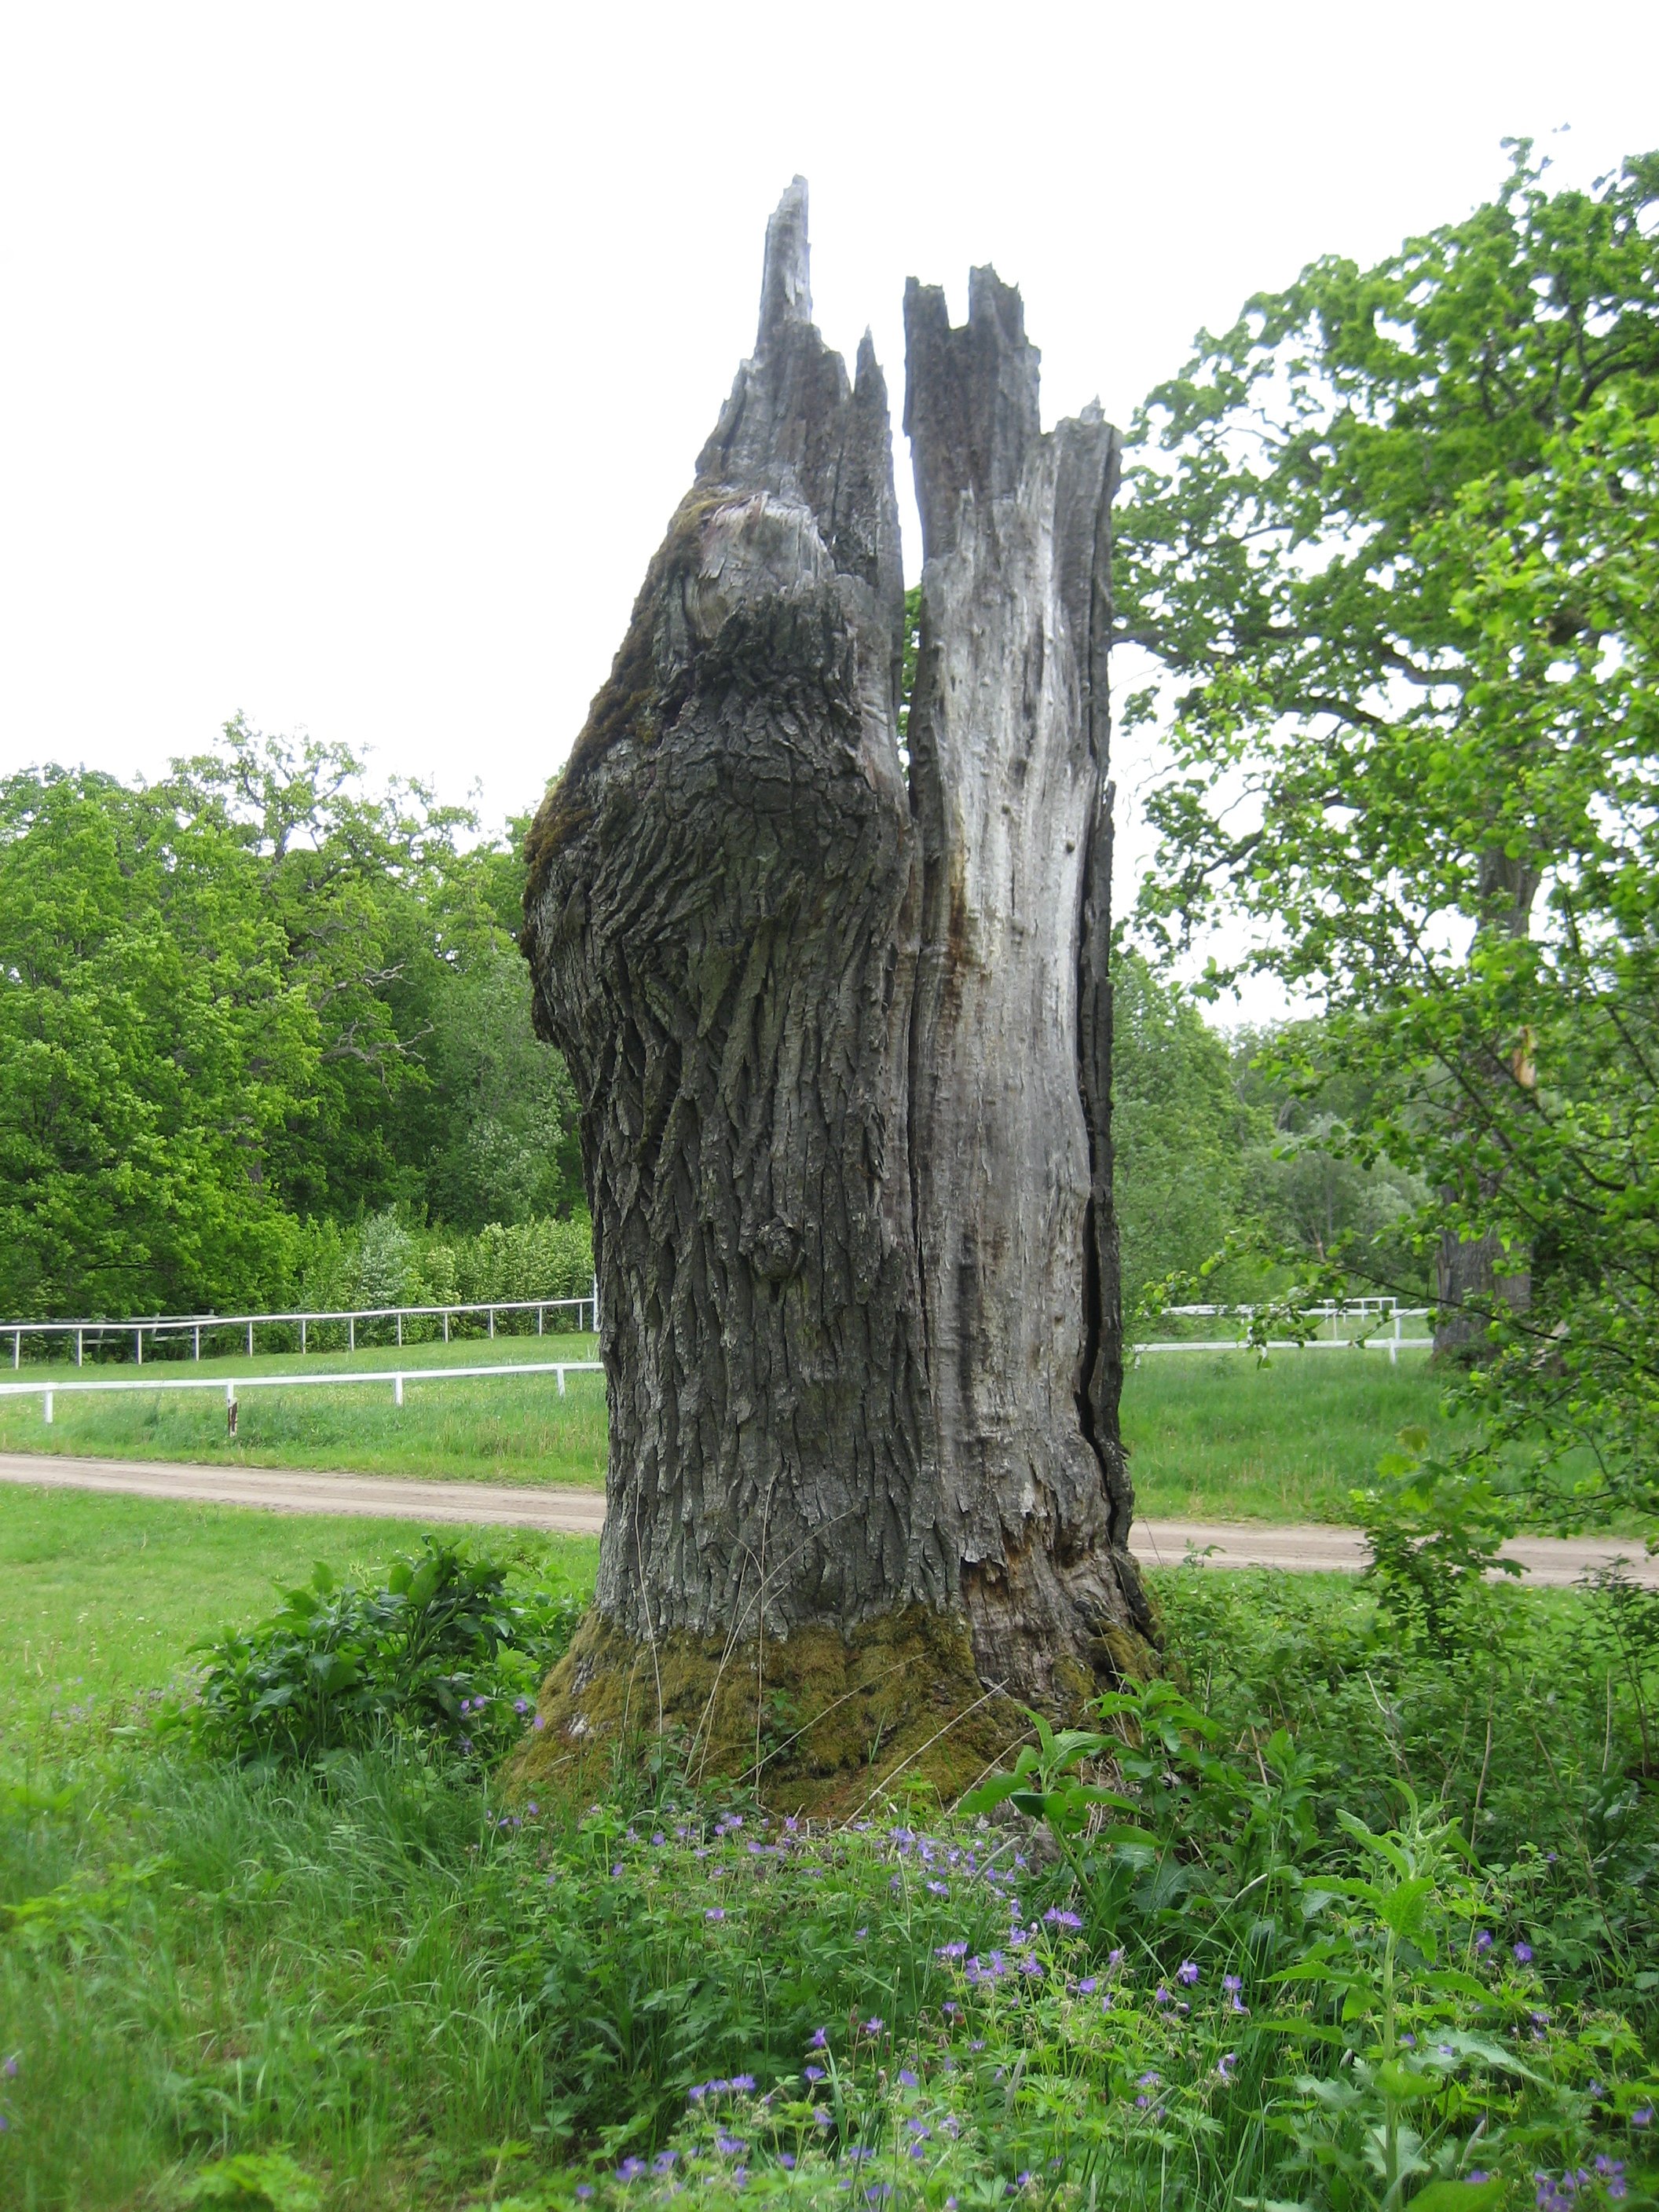 Gamalt träd med kluven stam och avsaknad av bark.